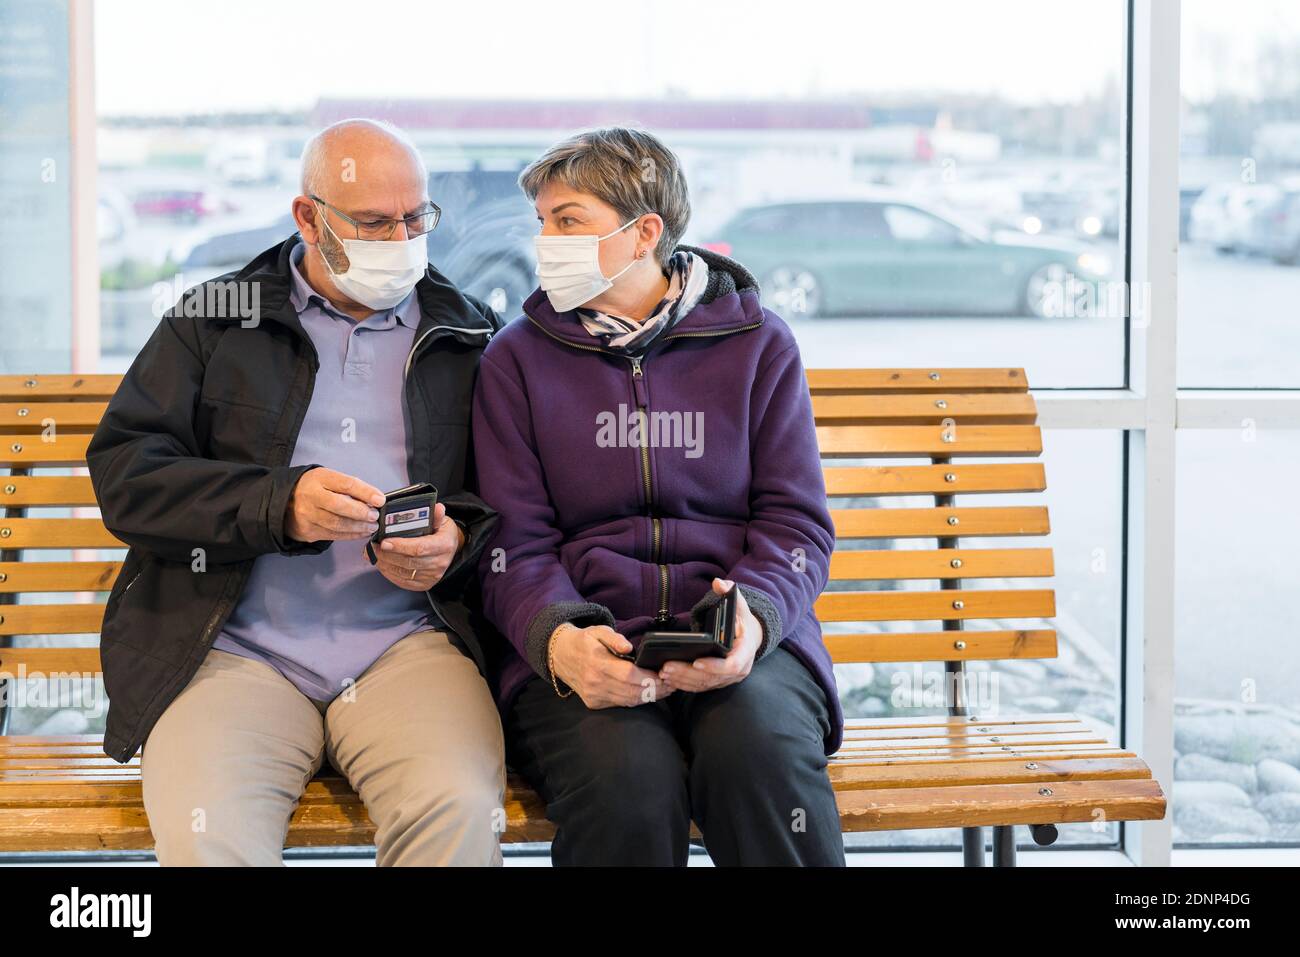 Couple portant un masque de protection assis sur un banc Banque D'Images